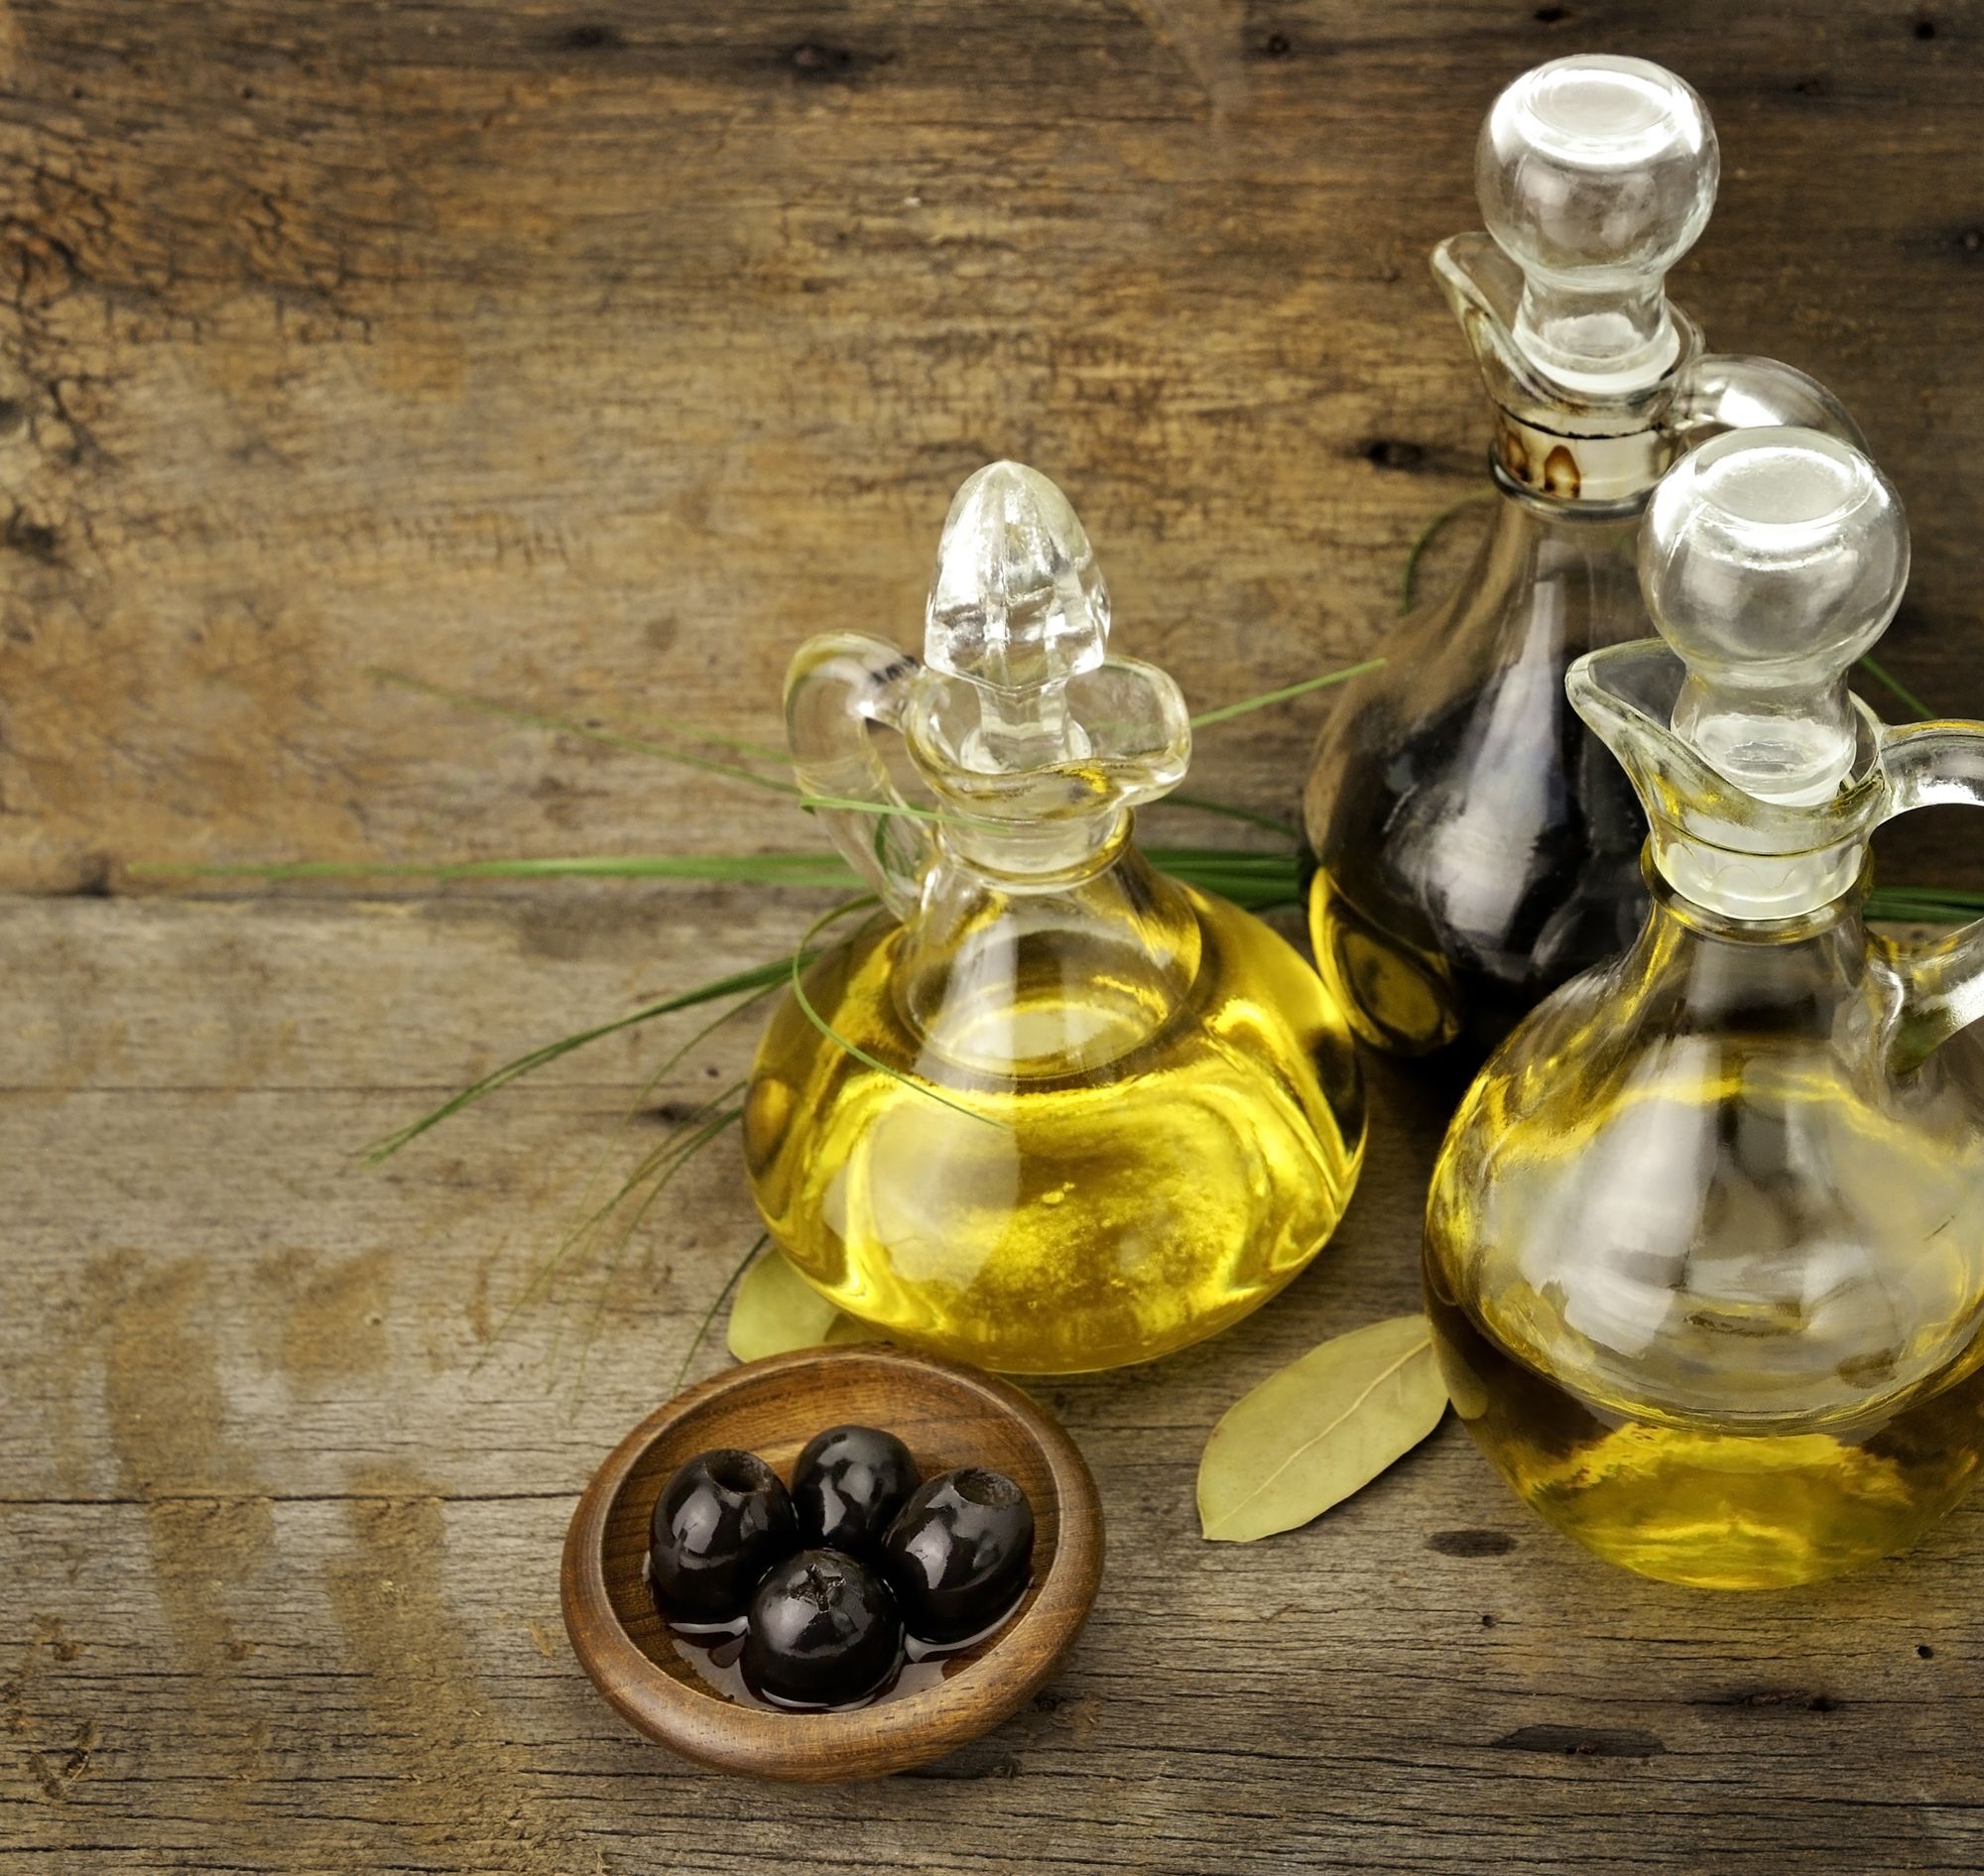 olive oil bottle and olives